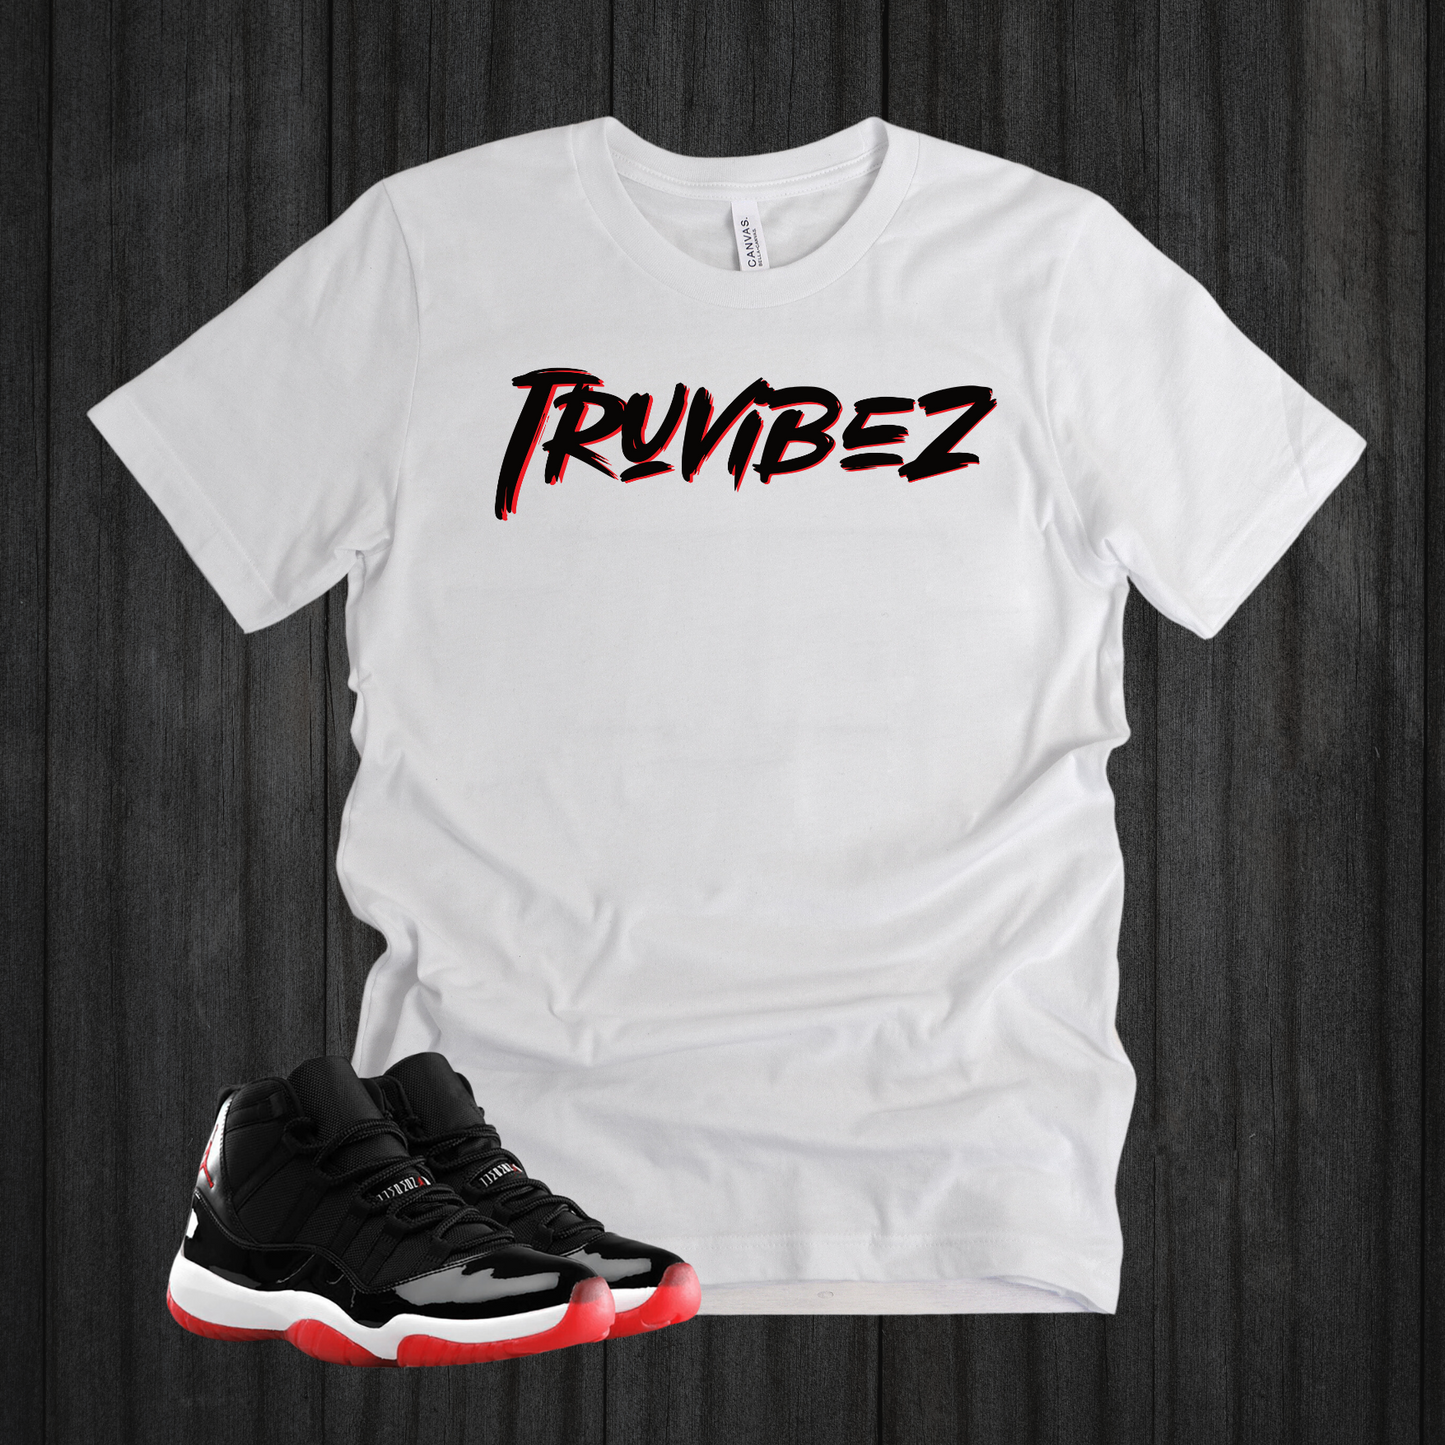 TruVIBEZ Shirts